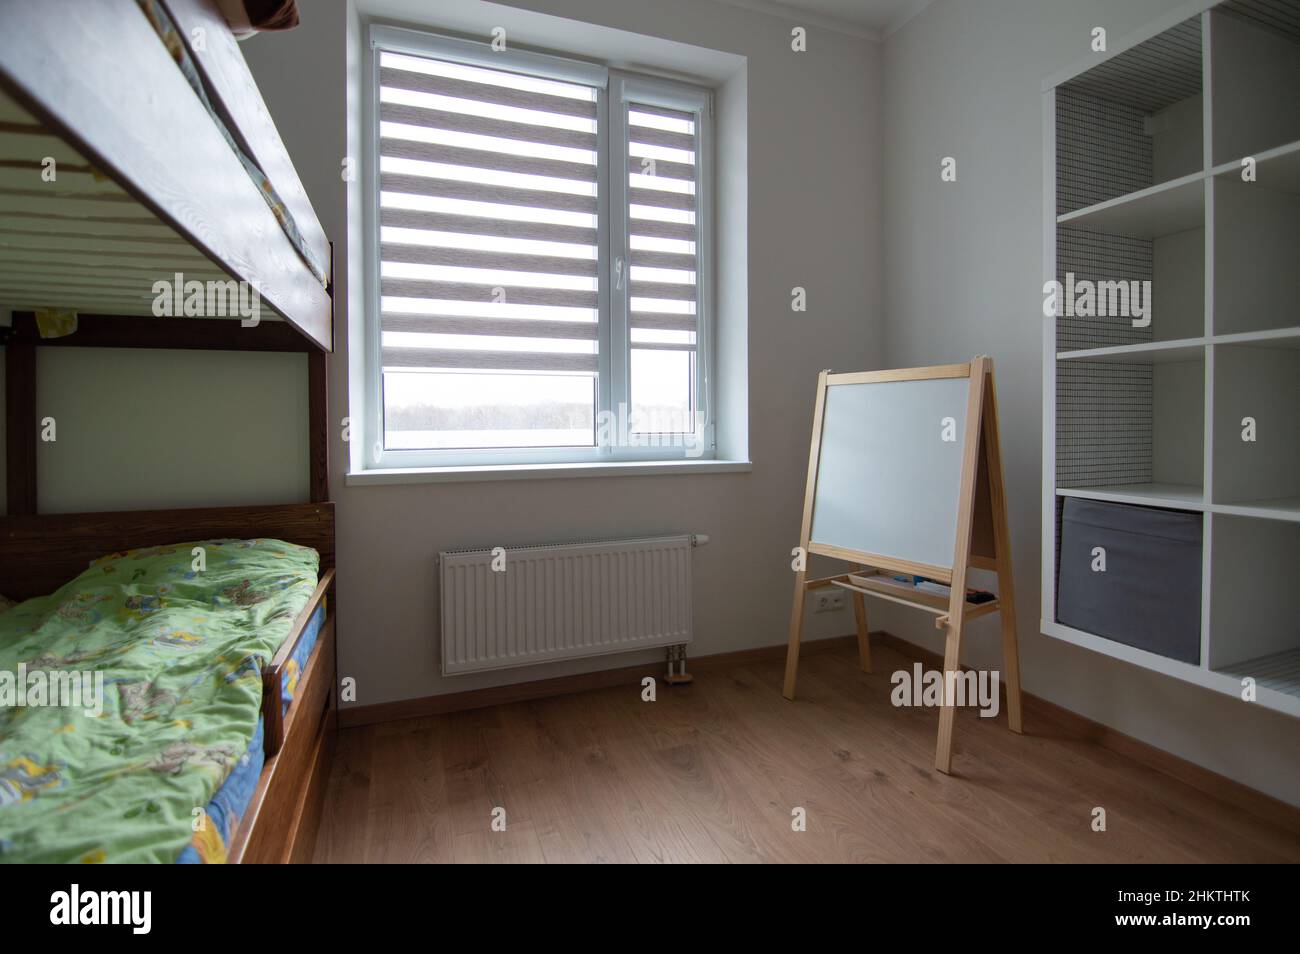 Kinderzimmer in einer Wohnung mit zwei Ebenen Bett, einem Satz von Regalen und einem weißen Brett Stockfoto